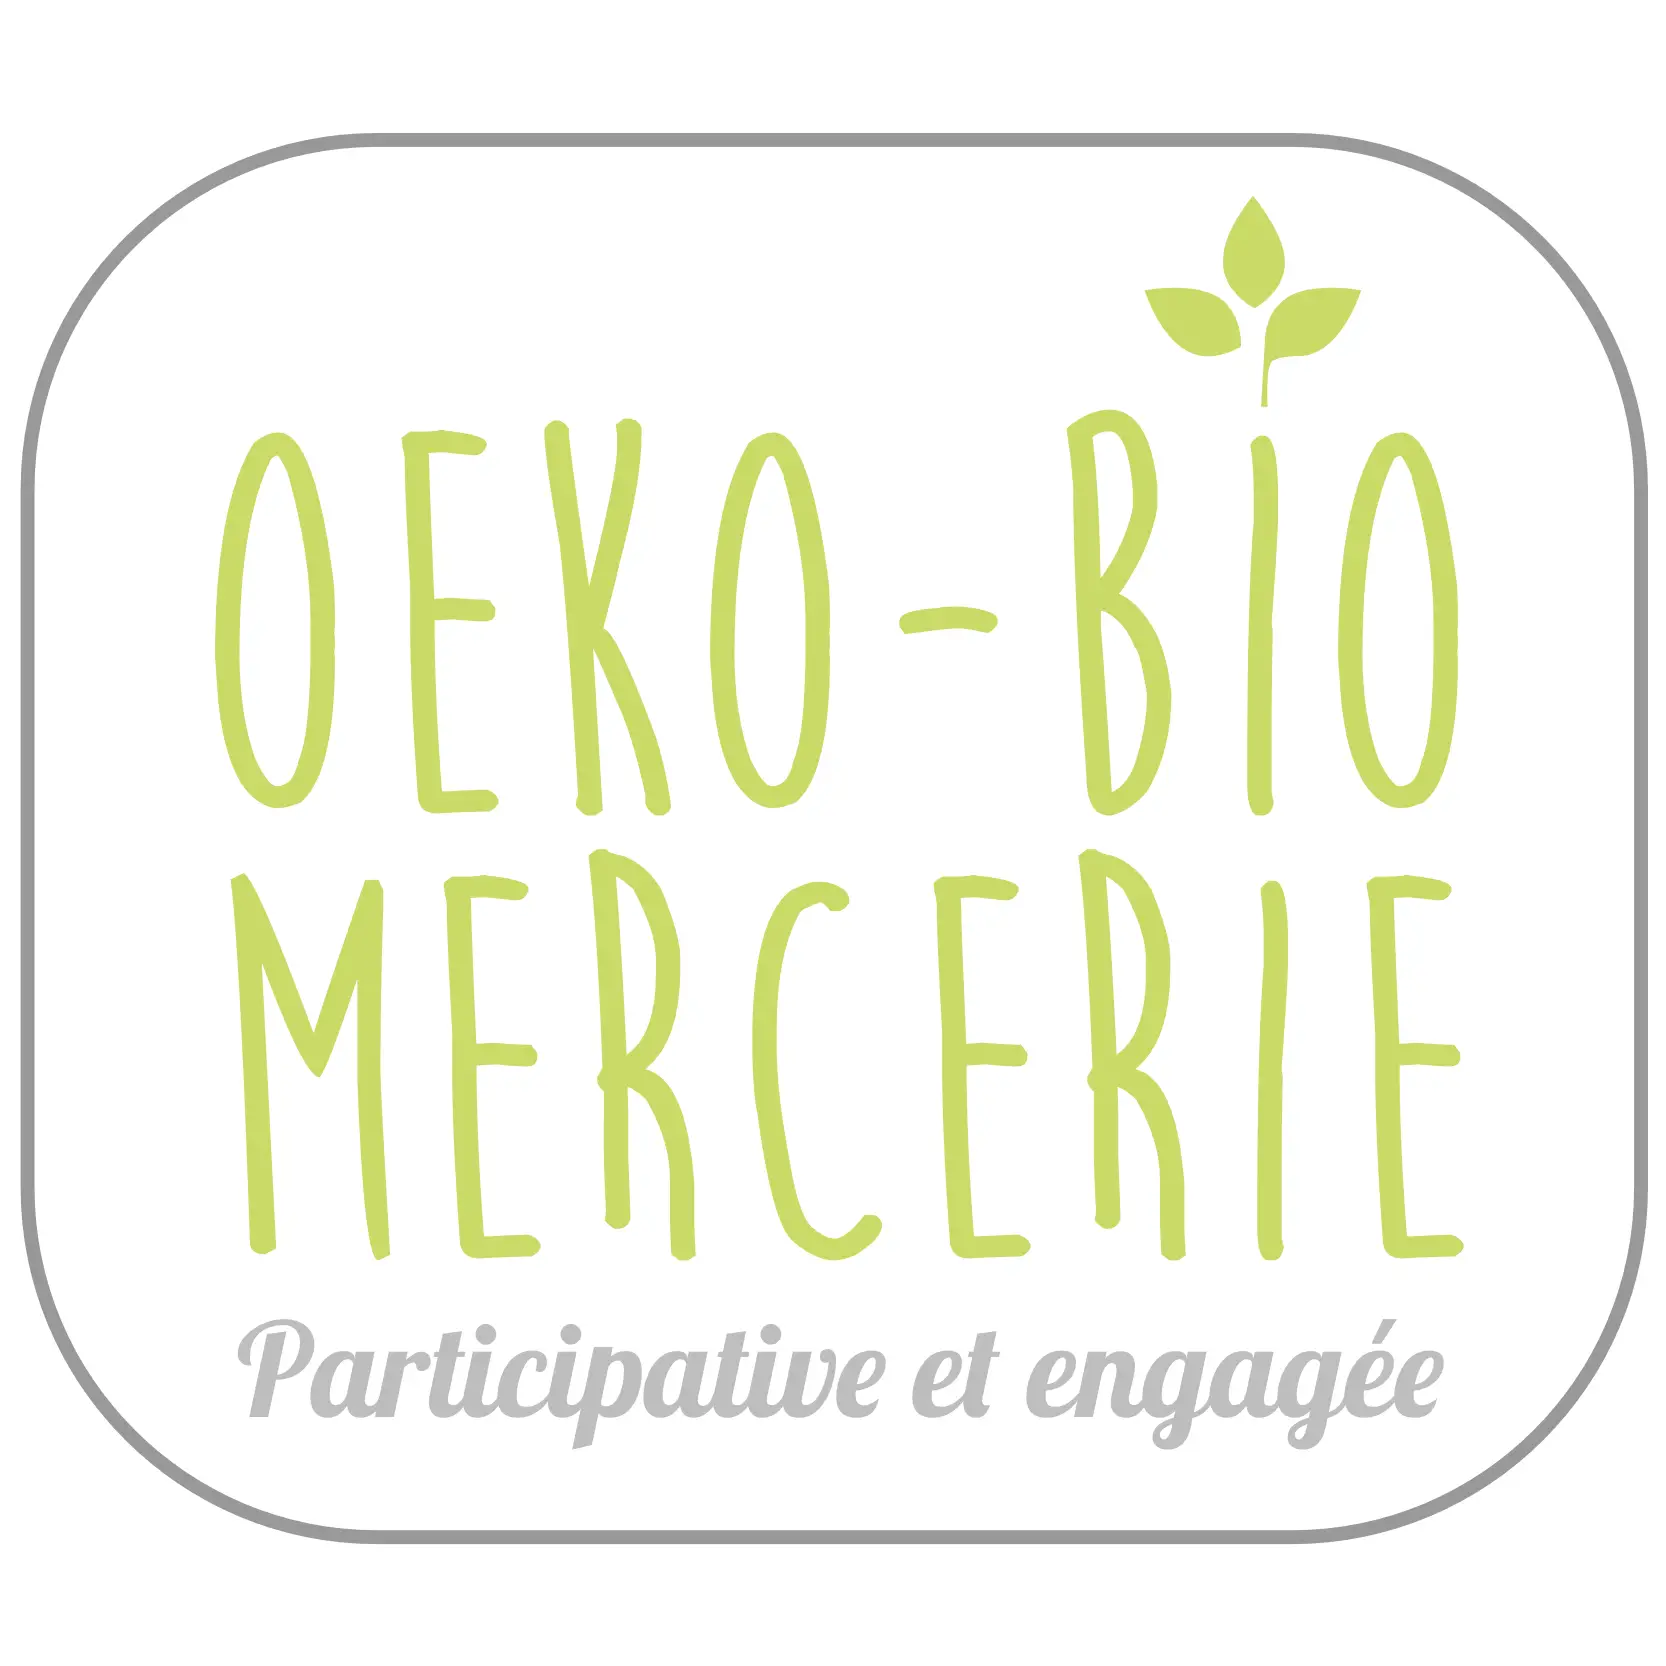 Oeko-Bio Mercerie